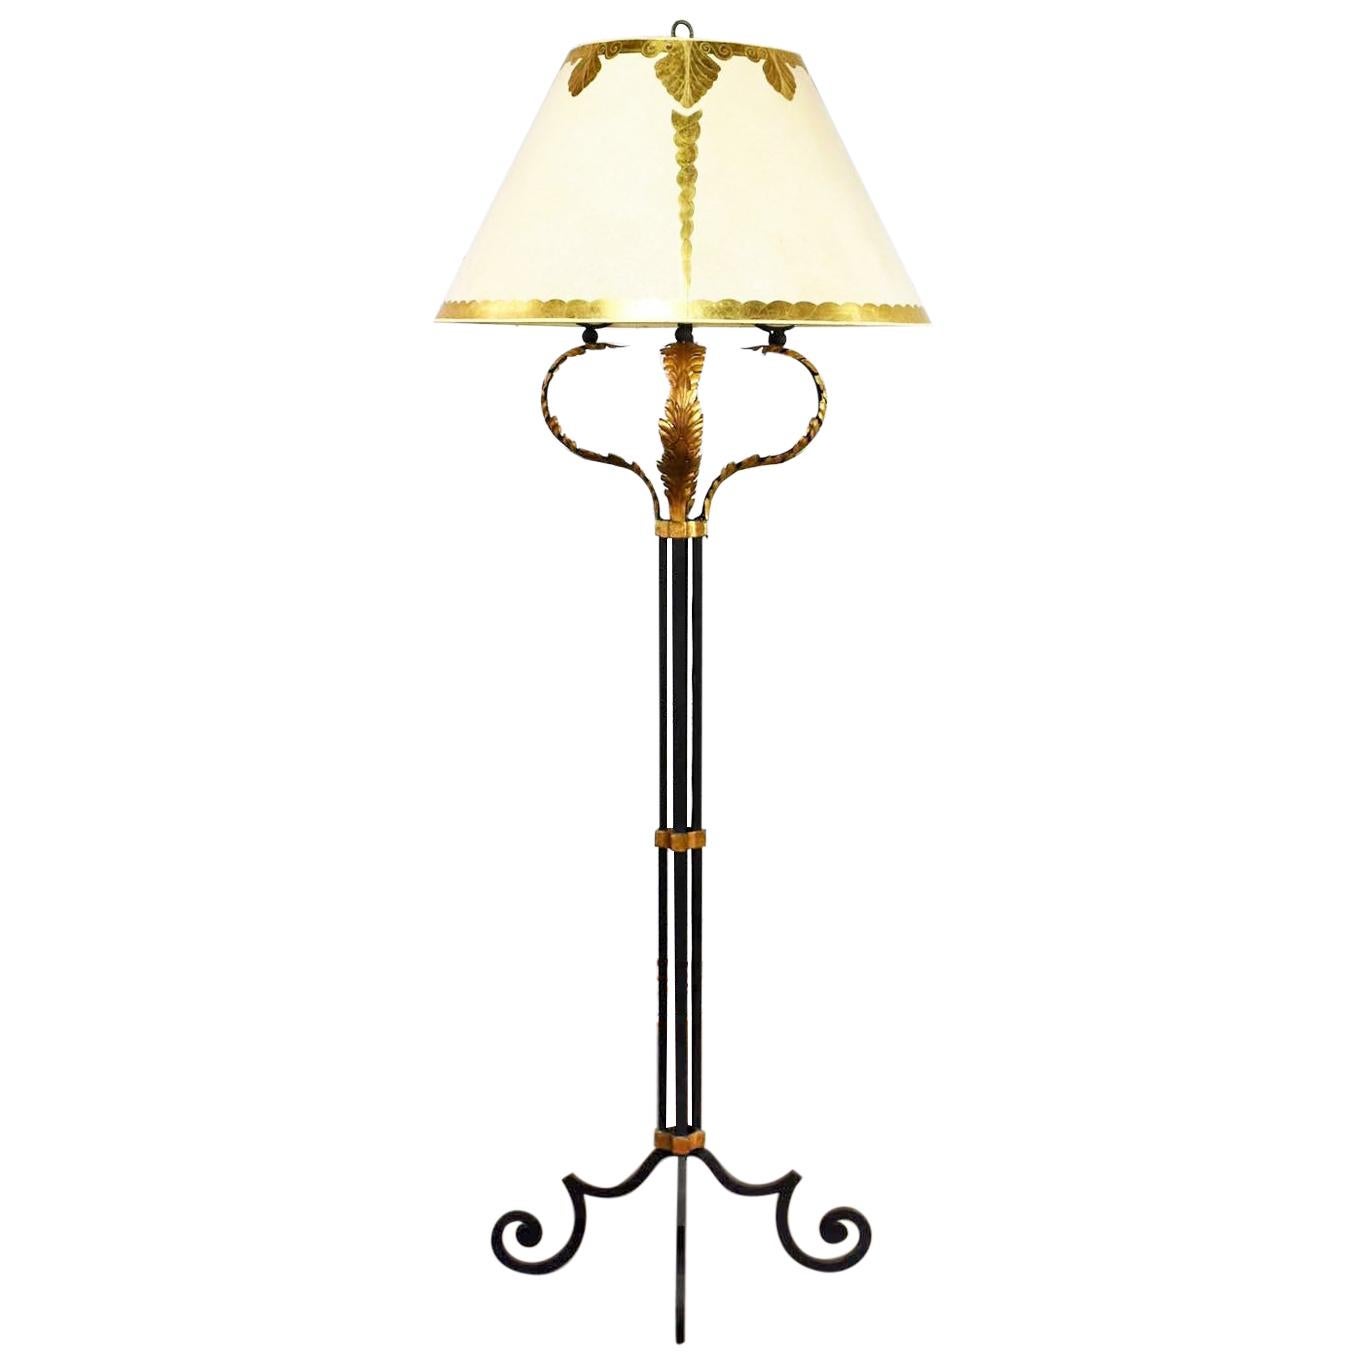 Monumentale neoklassizistische Eisen-Stehlampe mit Akanthusblatt-Design und Pergamentschirm